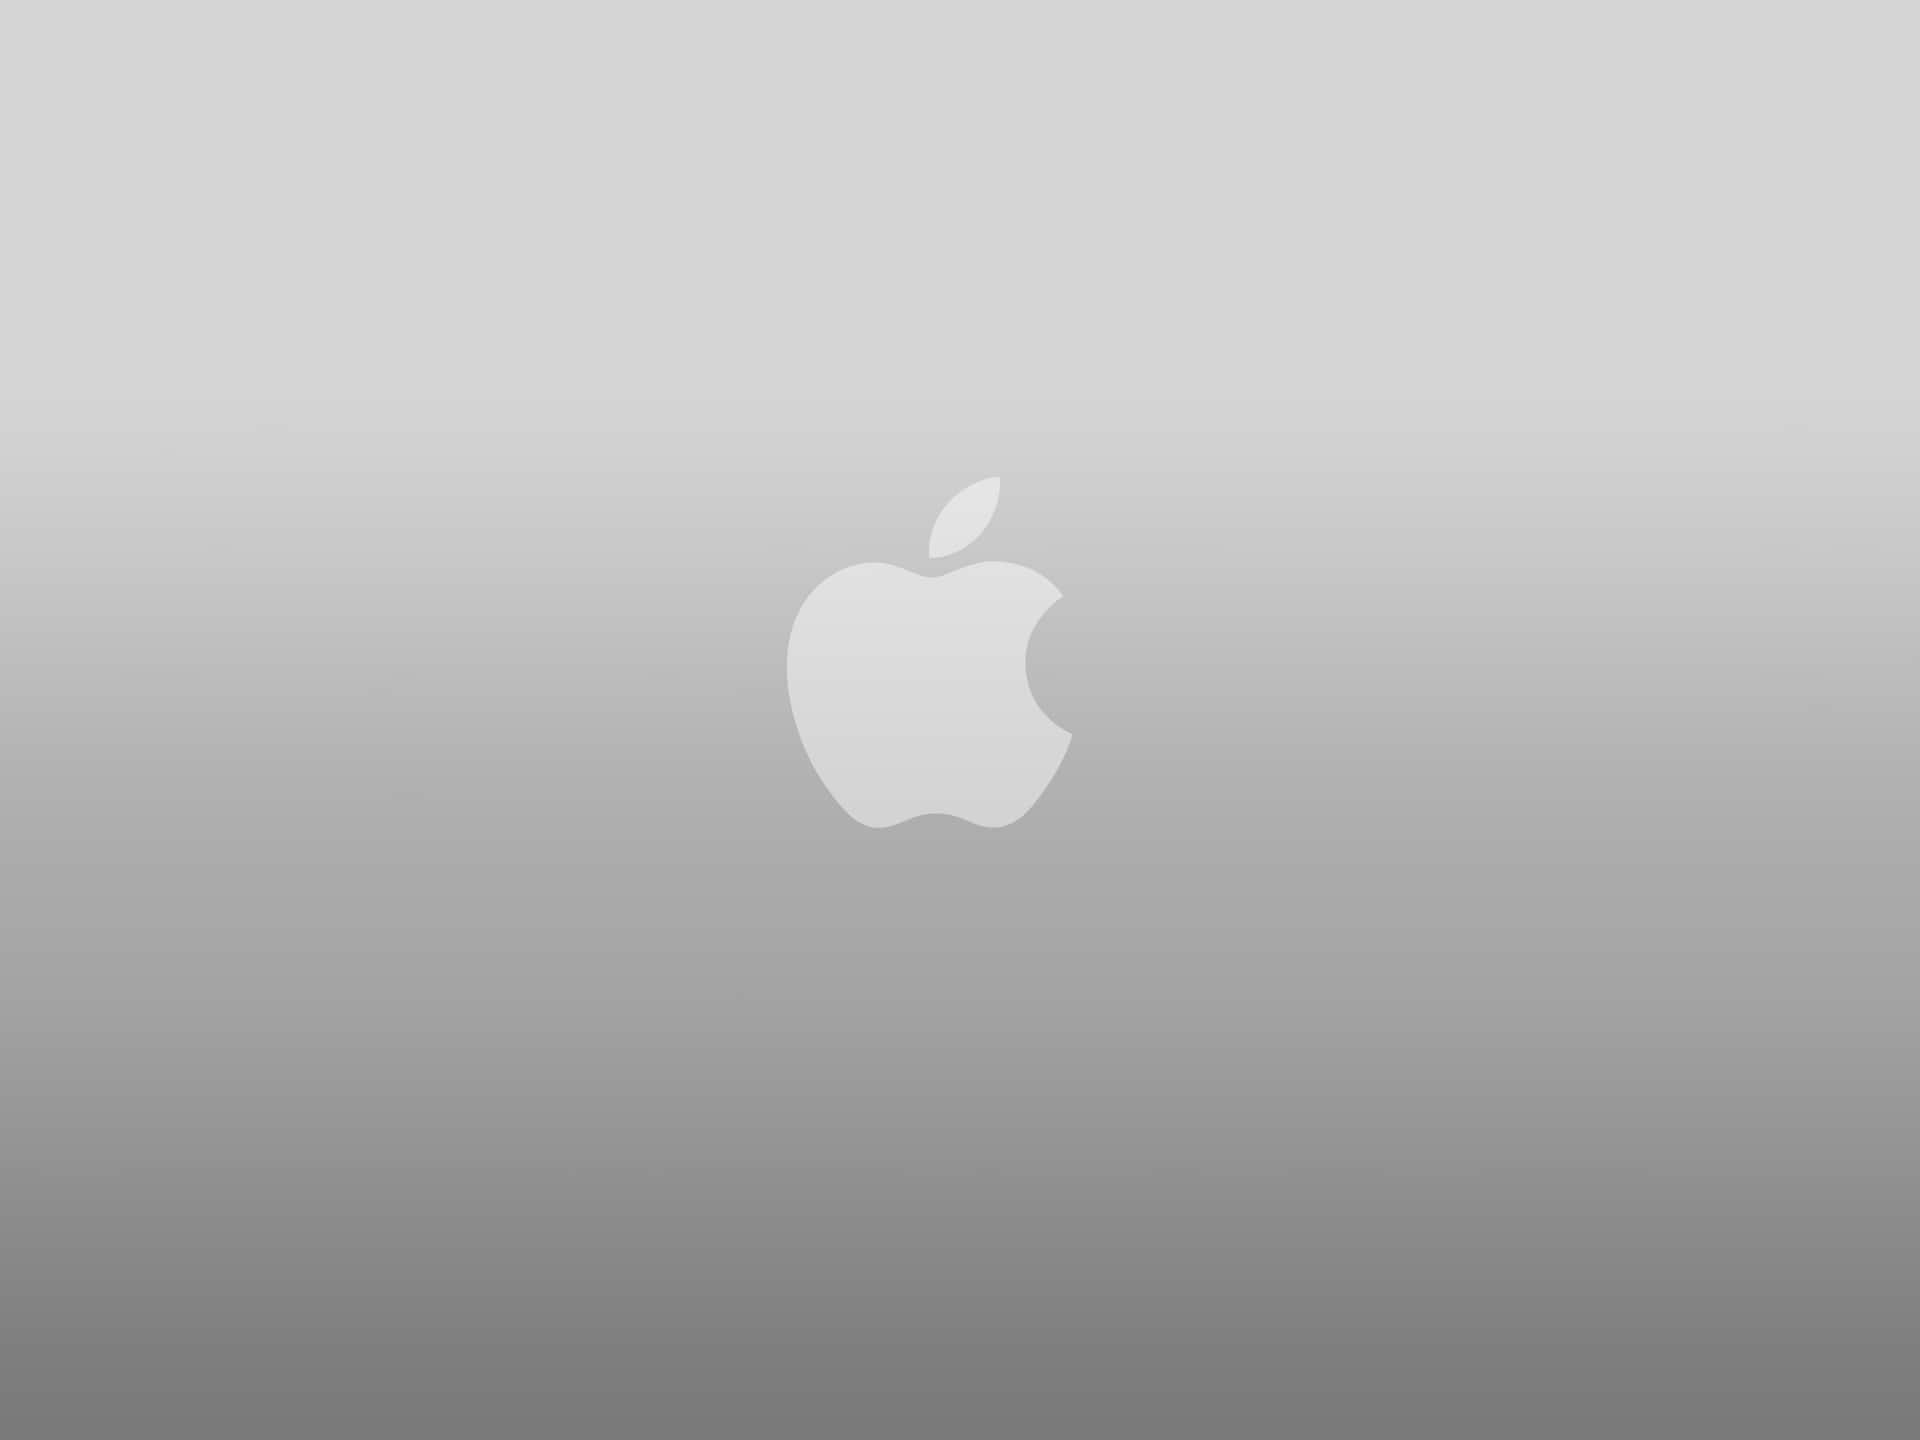 Elicónico Logotipo De Apple Destacado En El Nuevo Iphone X Fondo de pantalla